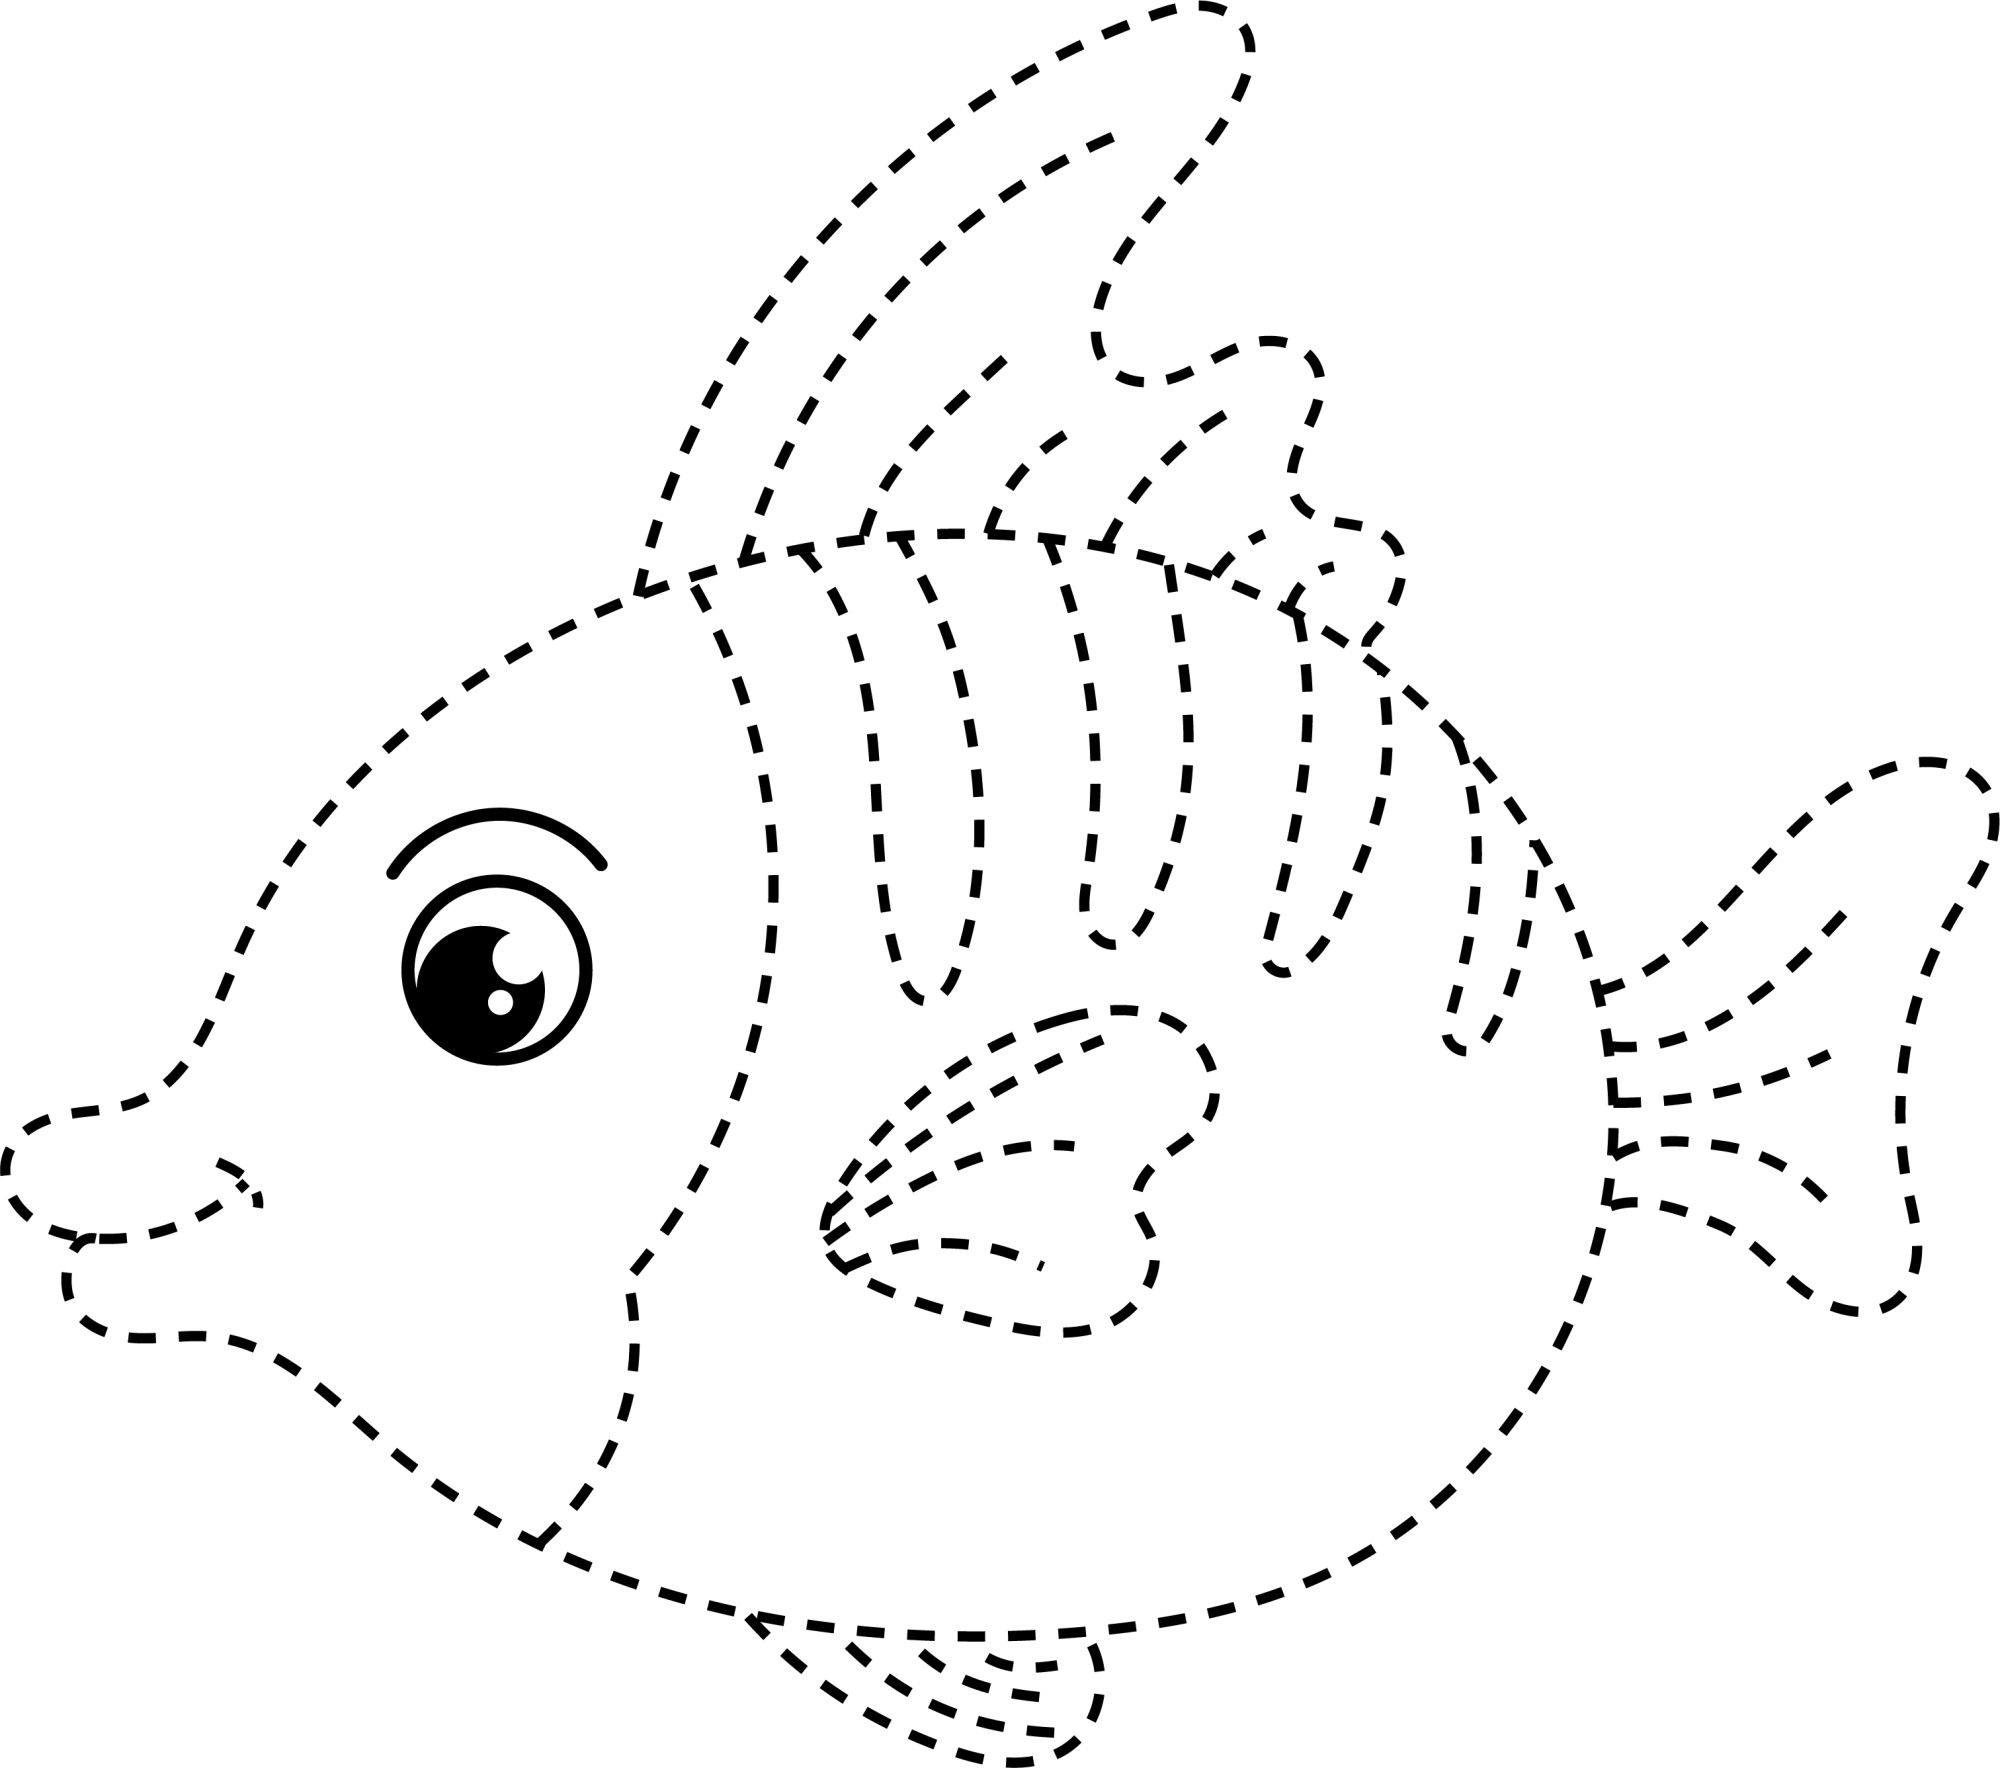 Раскраска для детей: большая рыба по точкам